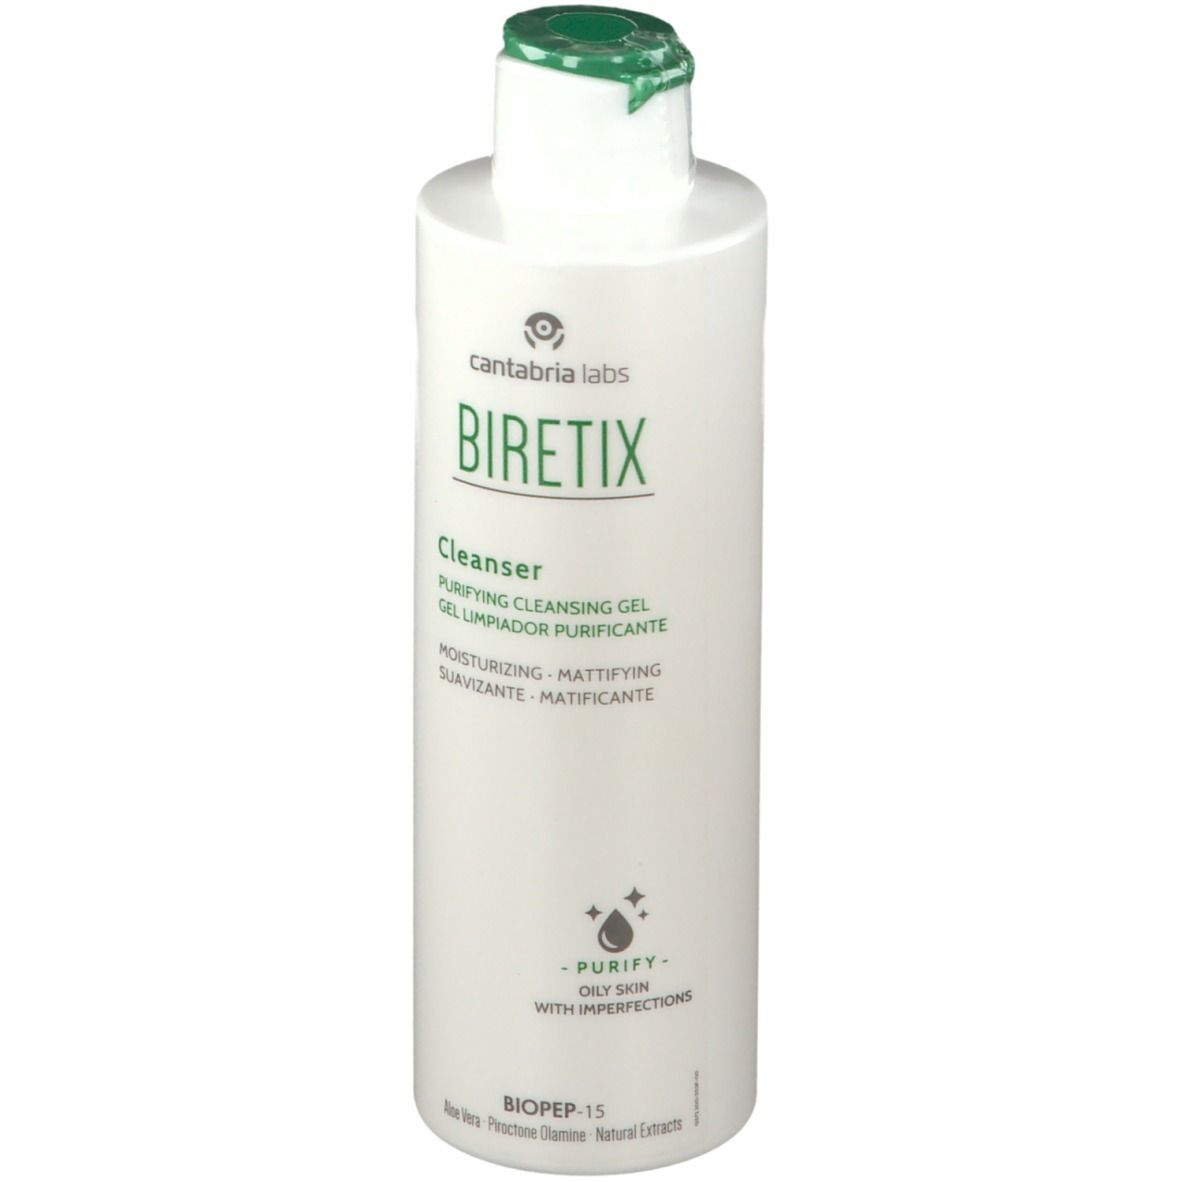 BIRETIX® Cleanser